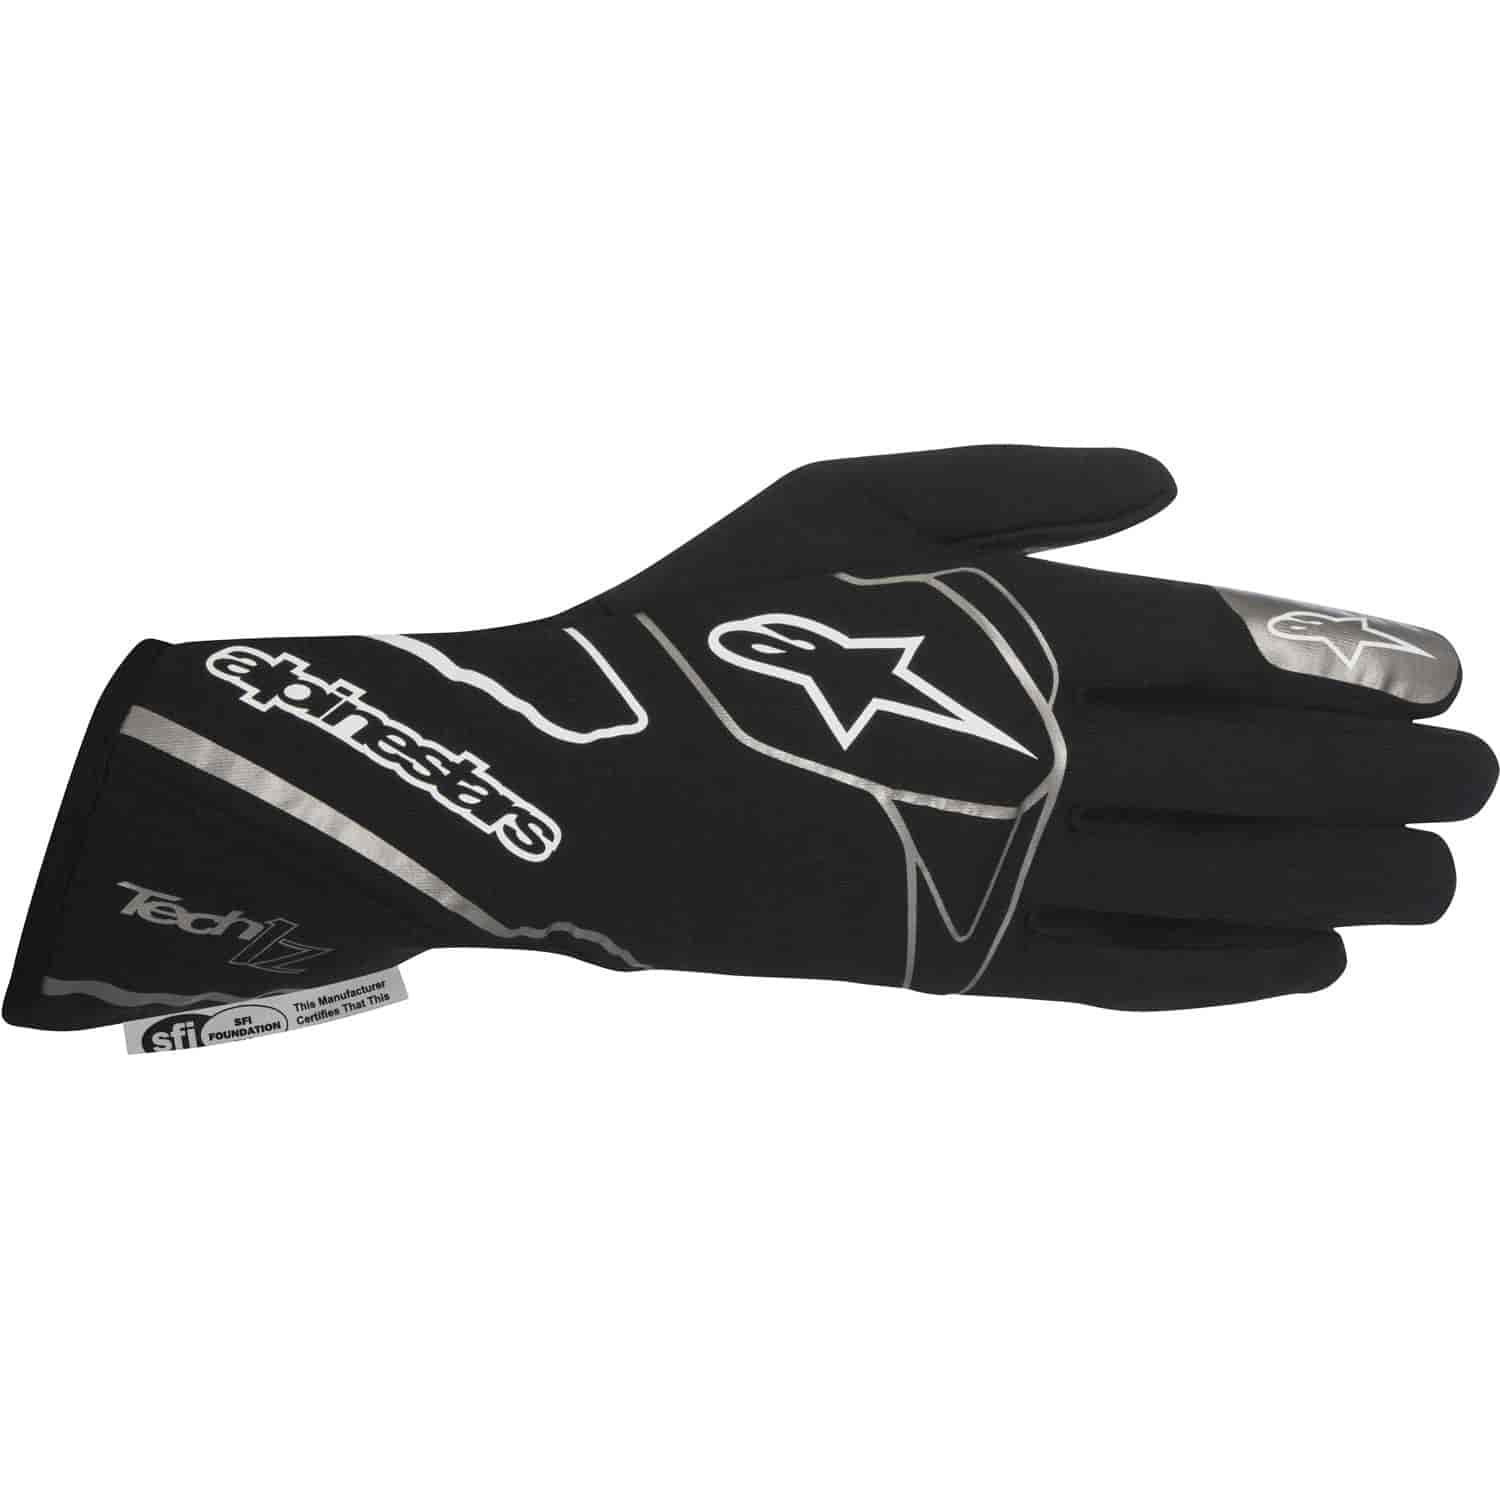 Tech 1-Z Glove Black/White SFI 3.3/5